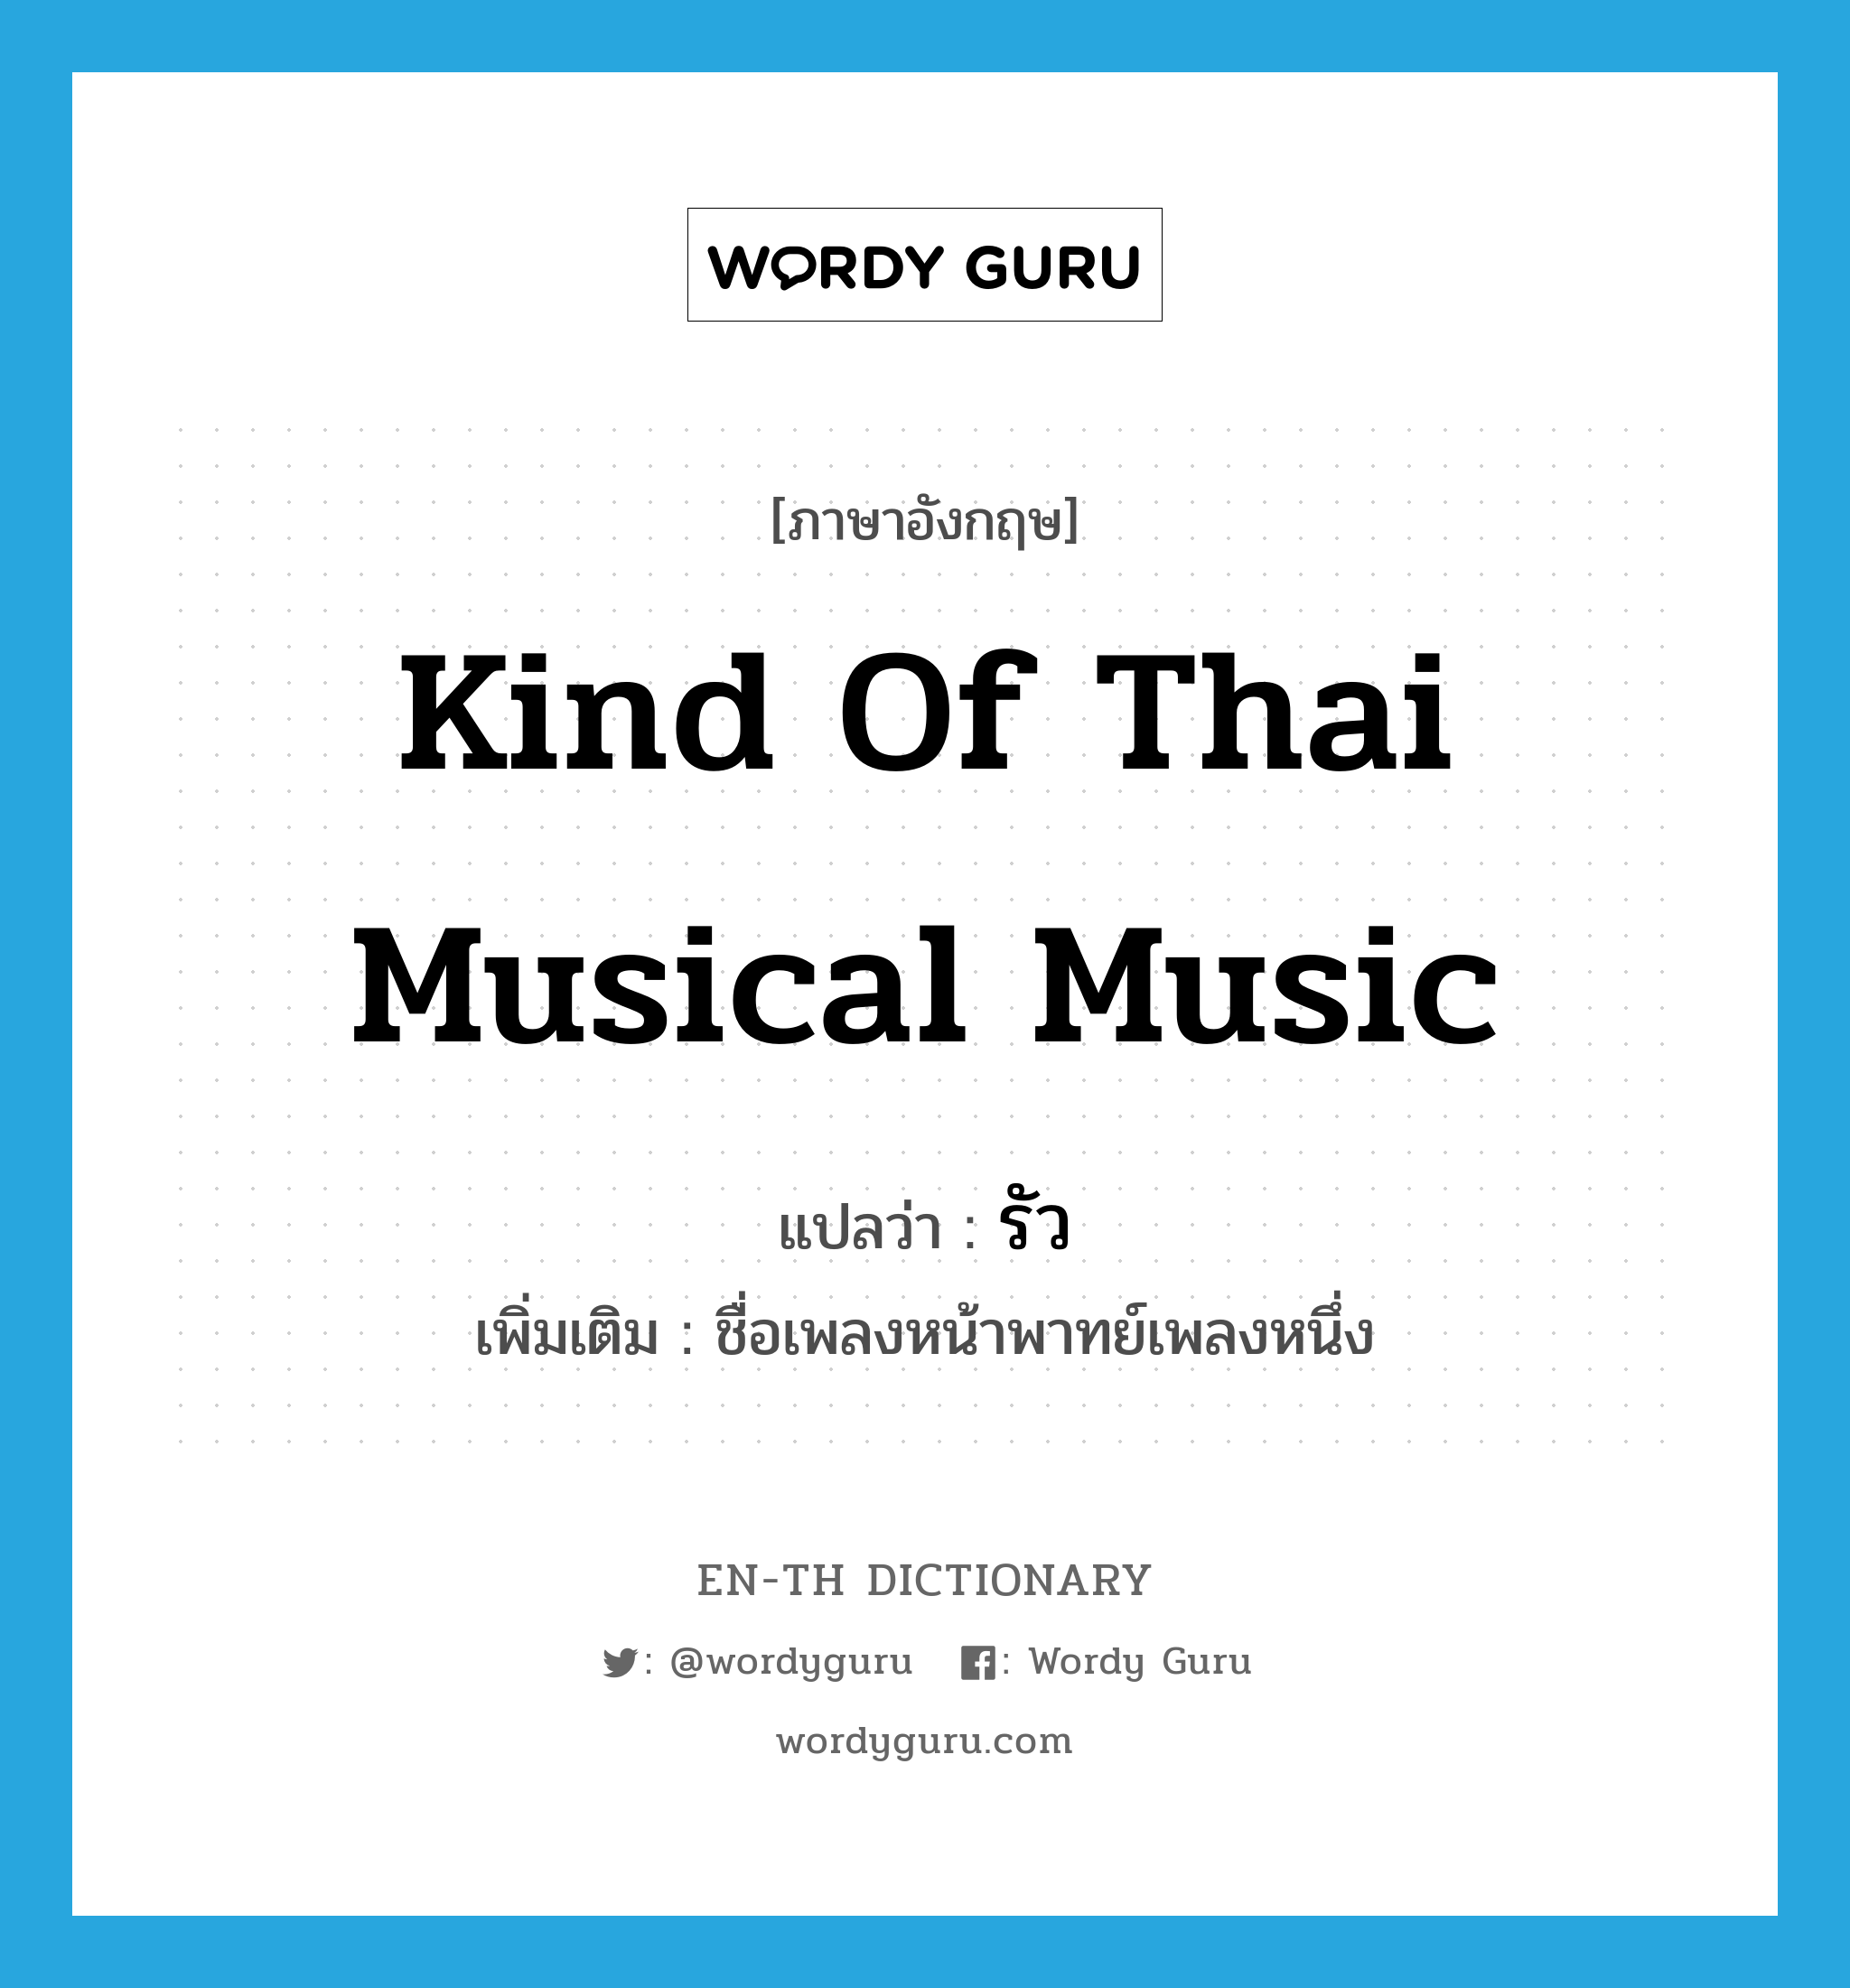 รัว ภาษาอังกฤษ?, คำศัพท์ภาษาอังกฤษ รัว แปลว่า kind of Thai musical music ประเภท N เพิ่มเติม ชื่อเพลงหน้าพาทย์เพลงหนึ่ง หมวด N